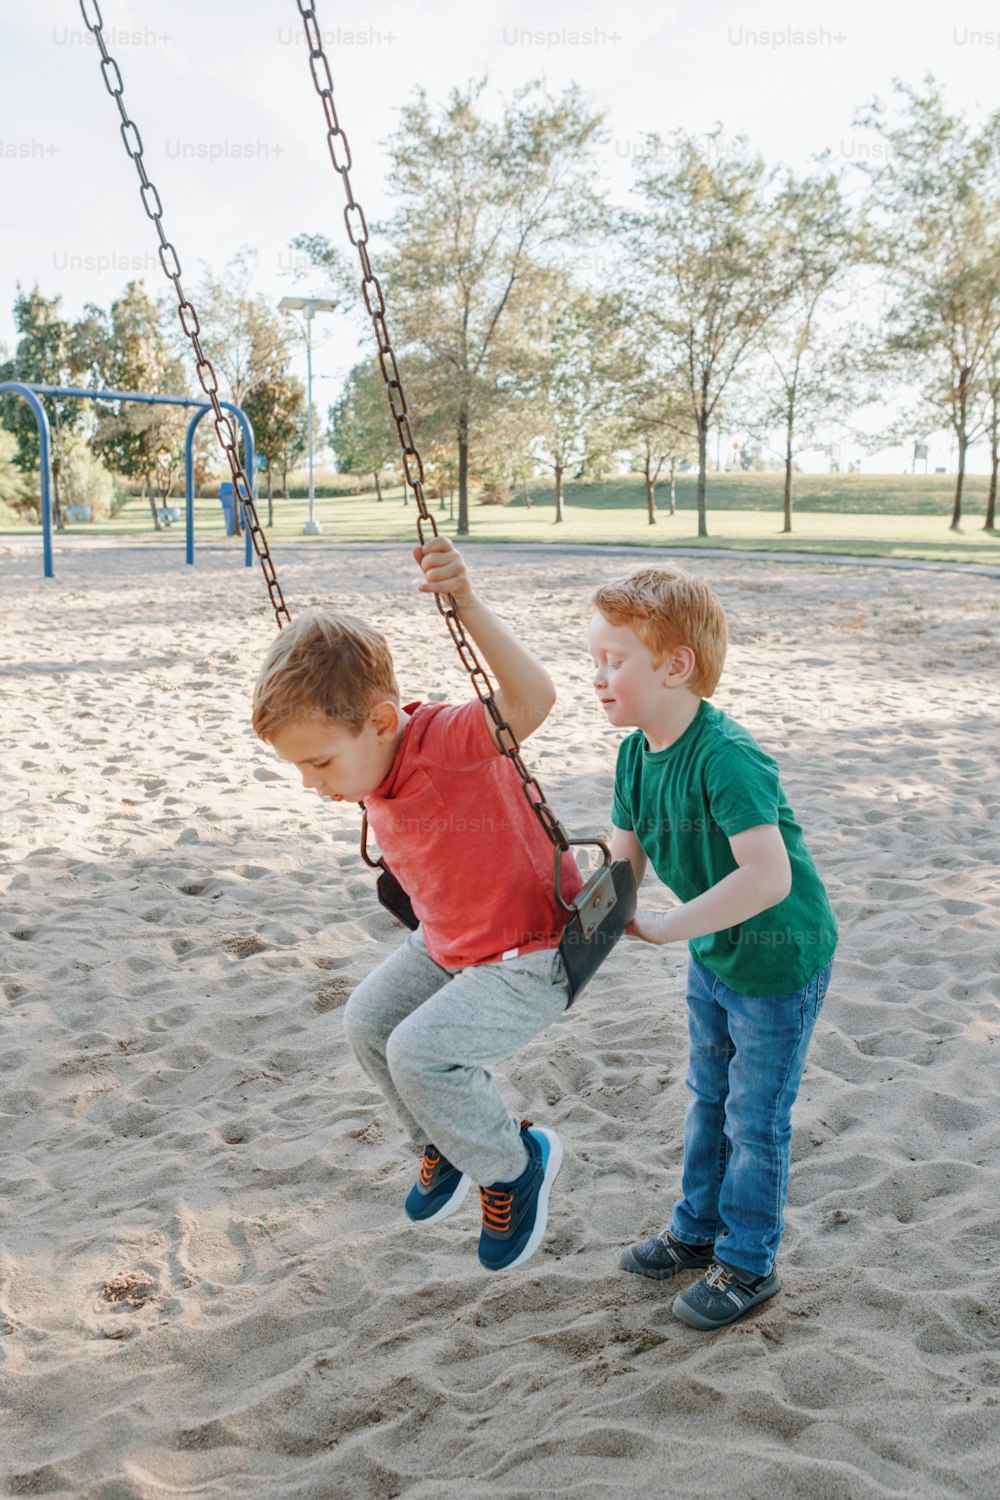 행복한 미소를 짓는 작은 미취학 아동 친구들은 여름날 놀이터에서 그네를 타고 있습니다. 행복한 어린 시절 생활 방식 개념입니다. 아이들을 위한 계절별 야외 활동.